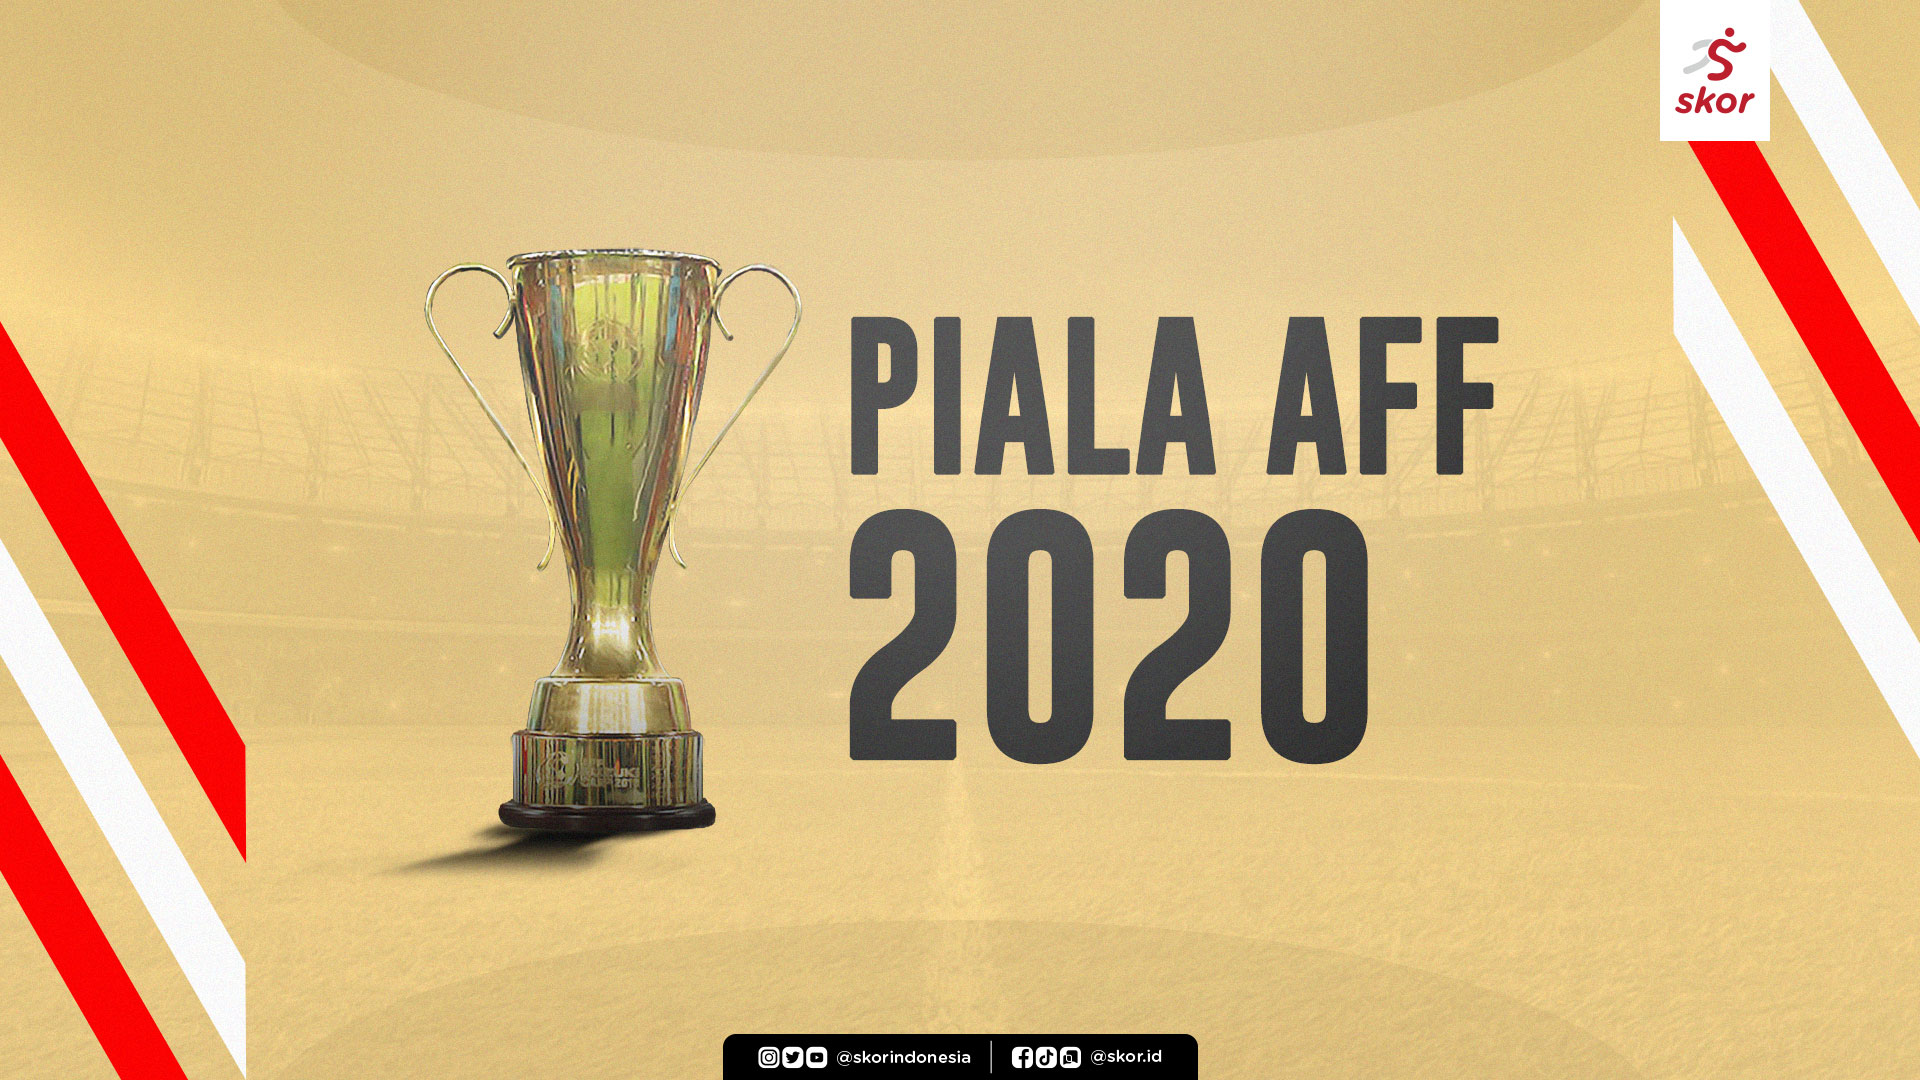 Update Top Skor Piala AFF 2020: Pemain Malaysia Memimpin, Dua Gelandang Timnas Indonesia Bersaing